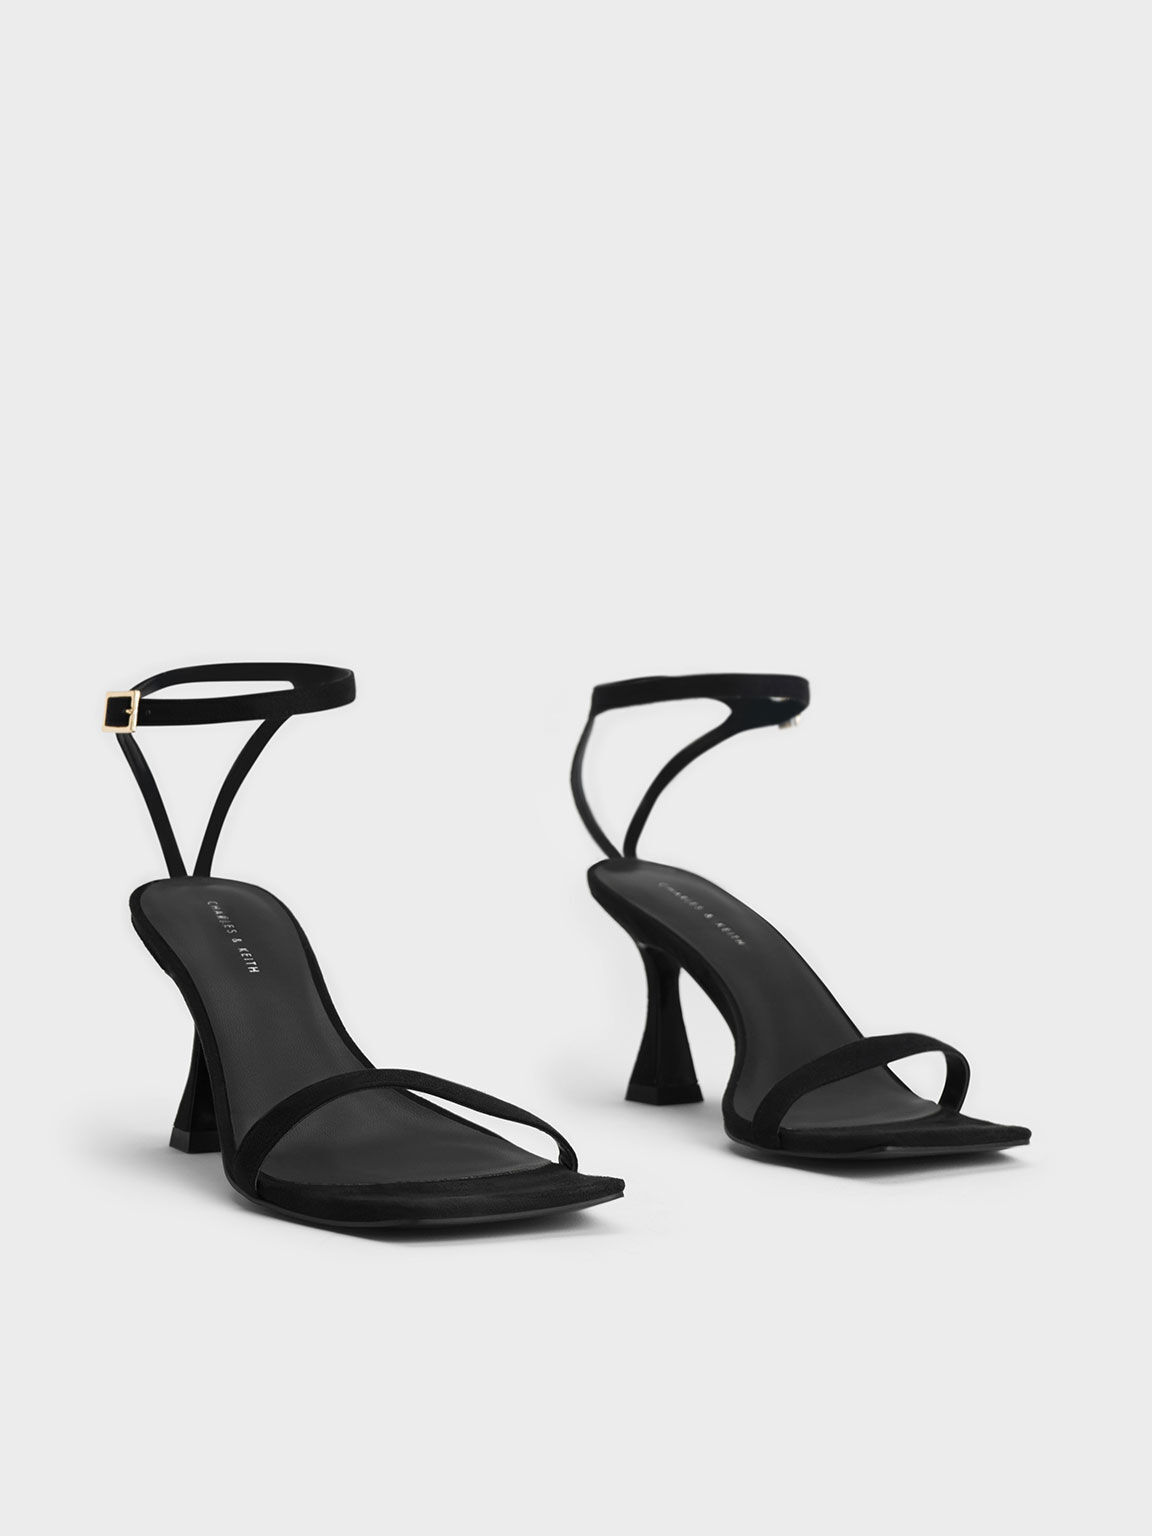 Sandal Heeled Ankle-Strap Textured, Black, hi-res